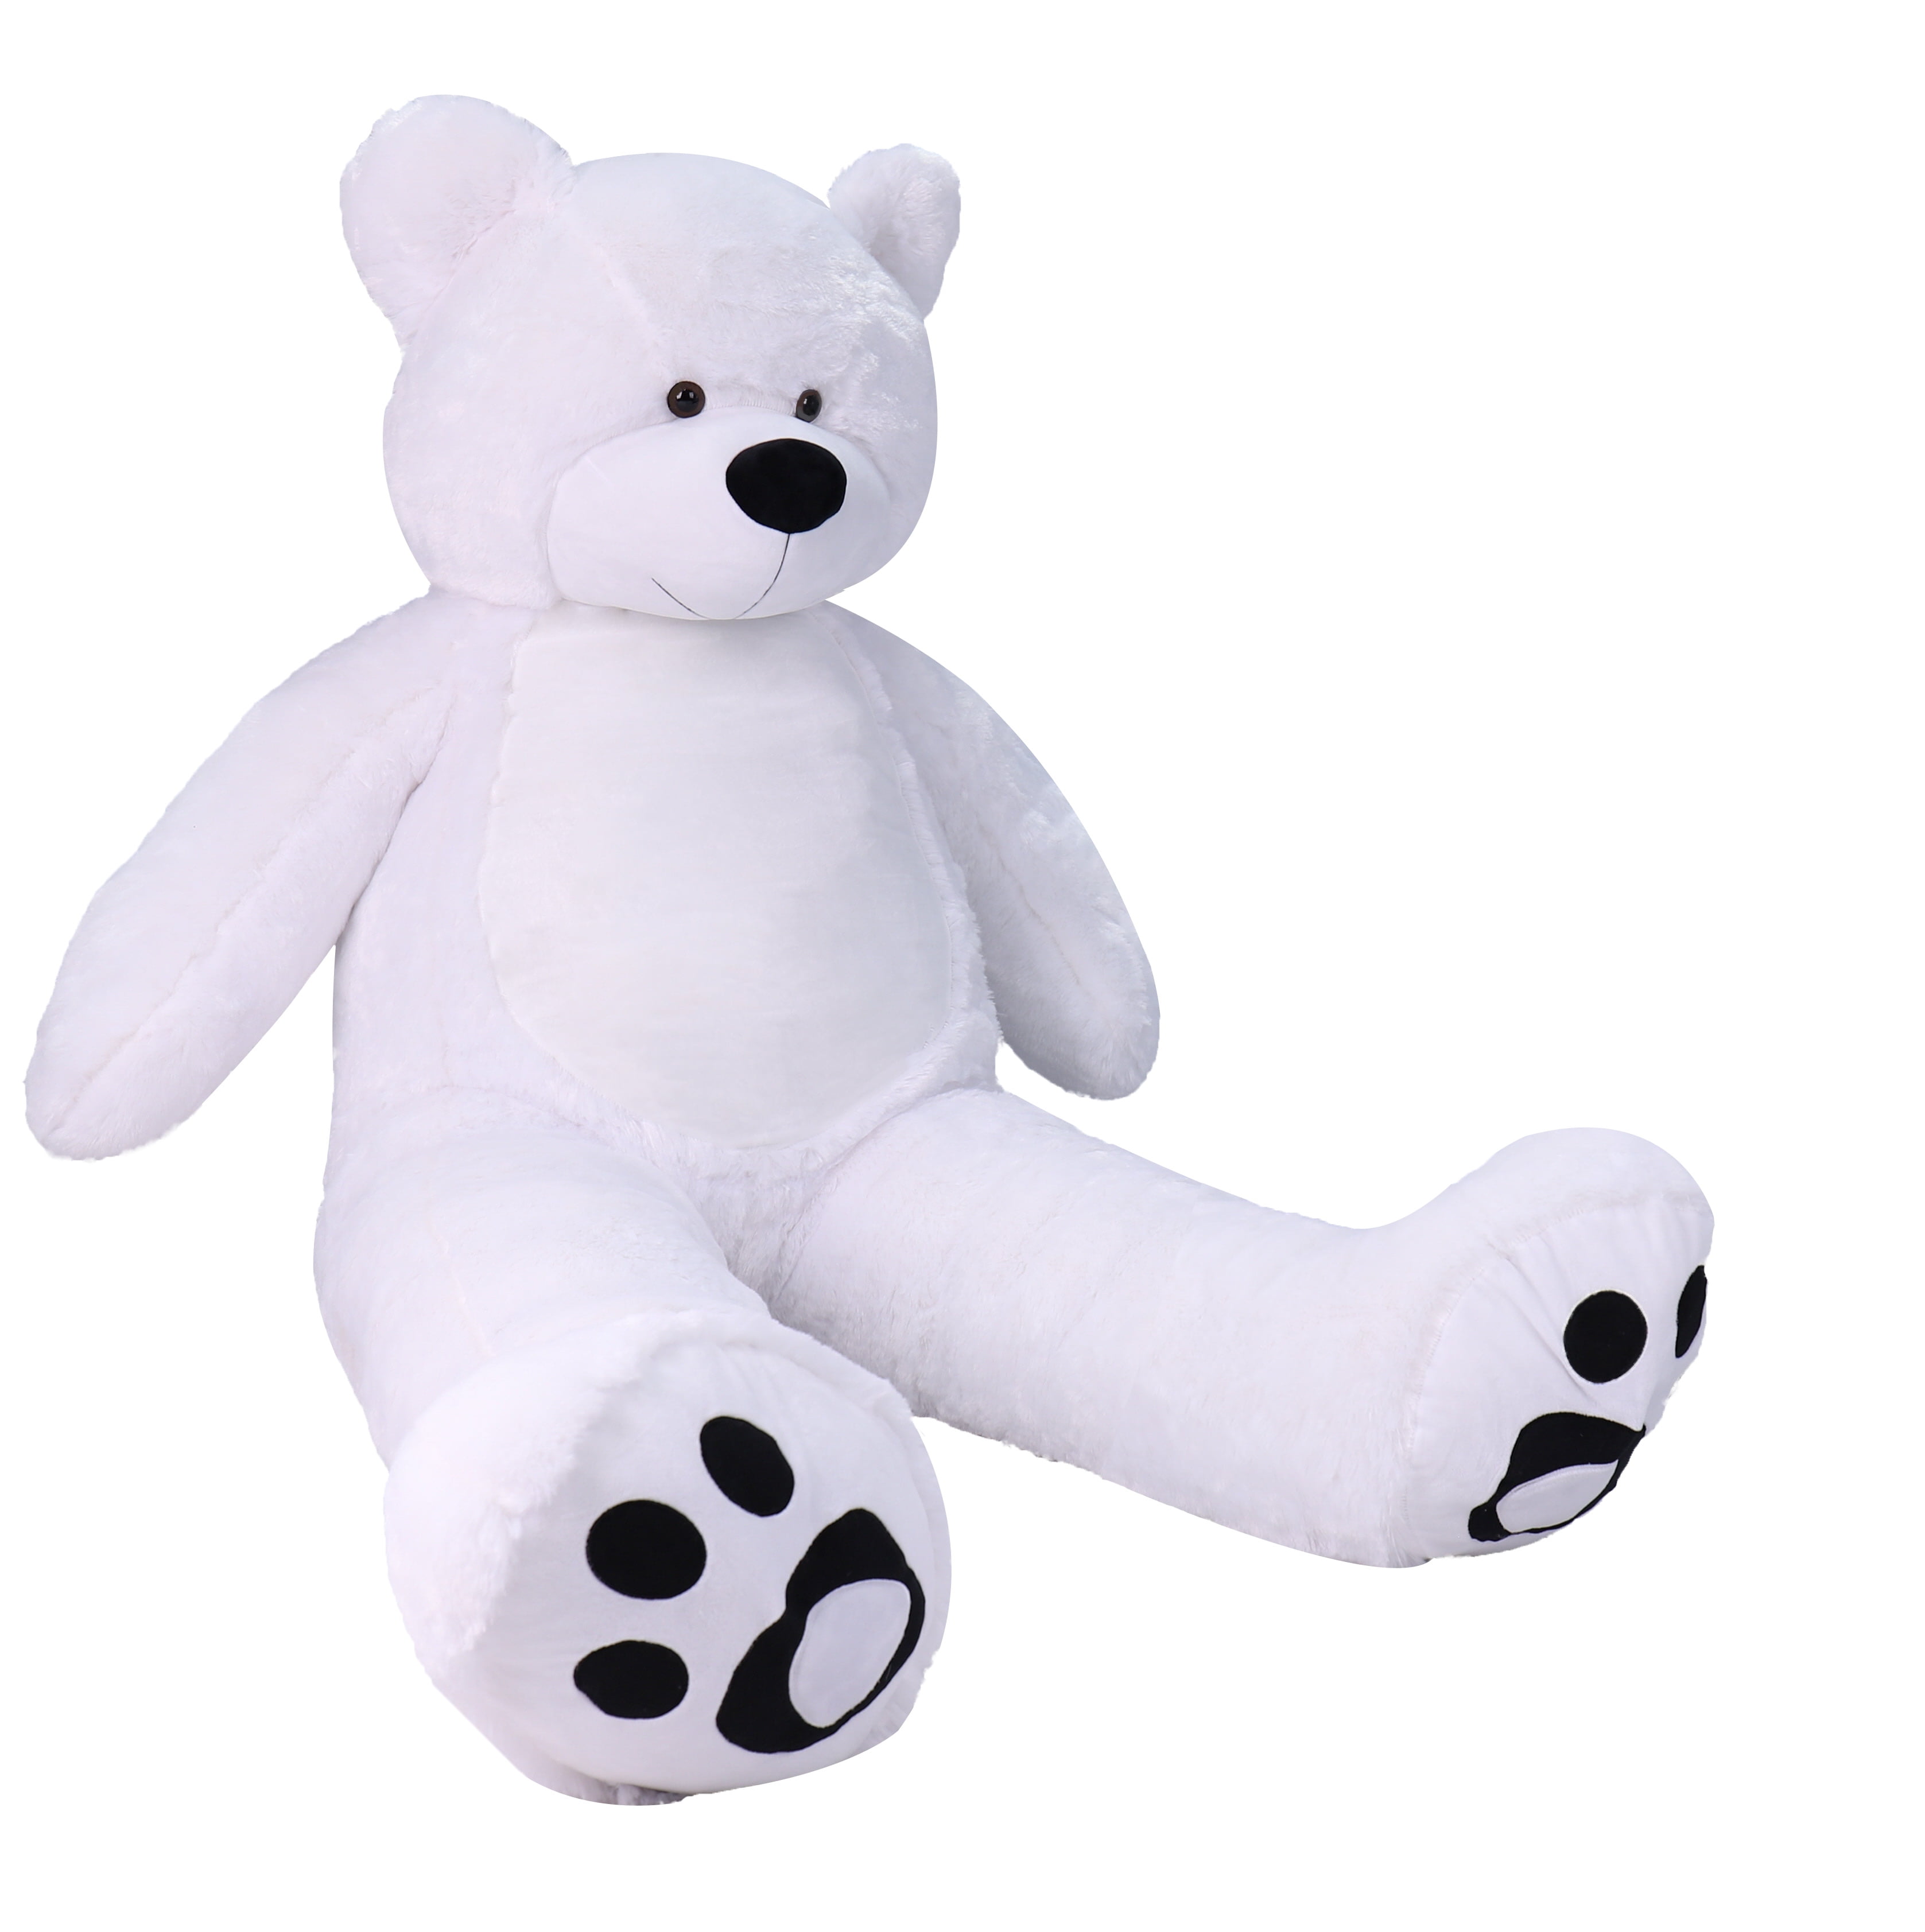 4 Foot White Giant Huge Teddy Bear Cuddly Stuffed Plush Animals Teddy Bear  